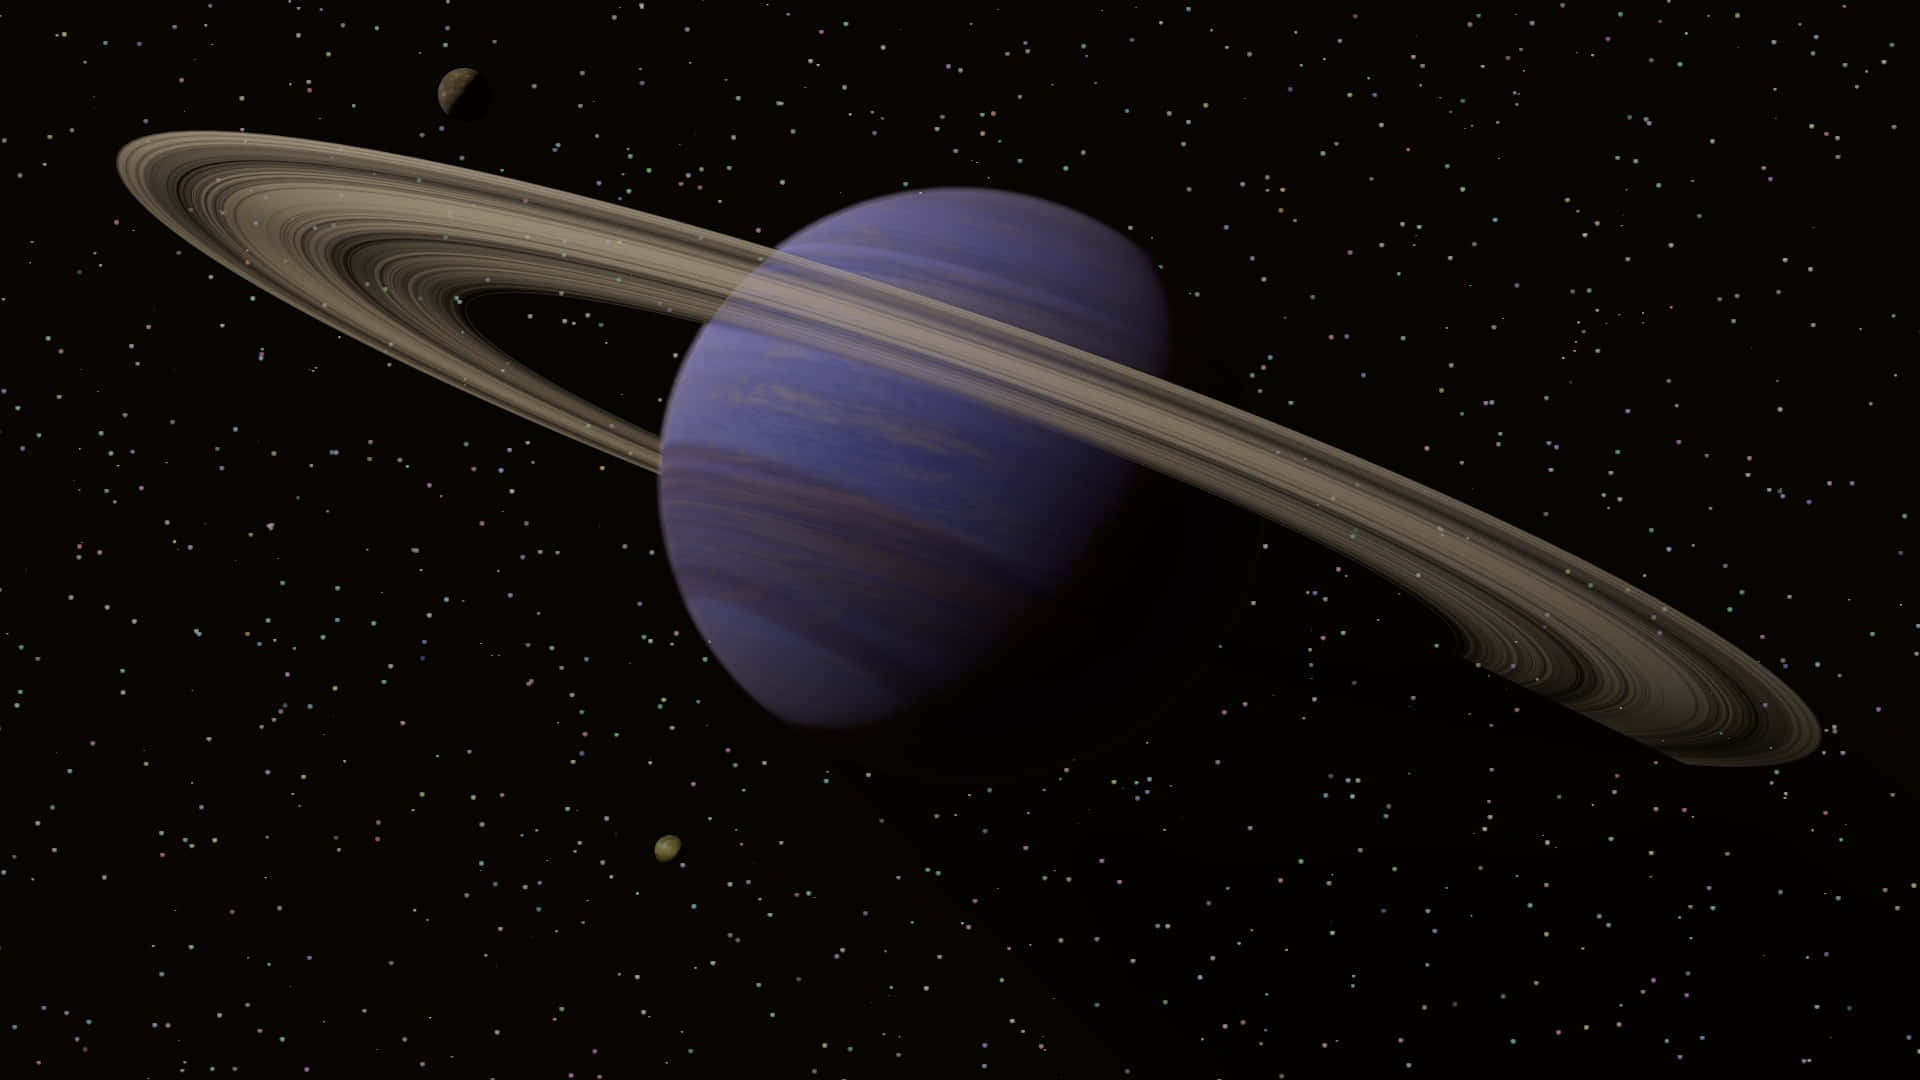 Saturnomajestuoso: El Magnífico Planeta Con Anillos.